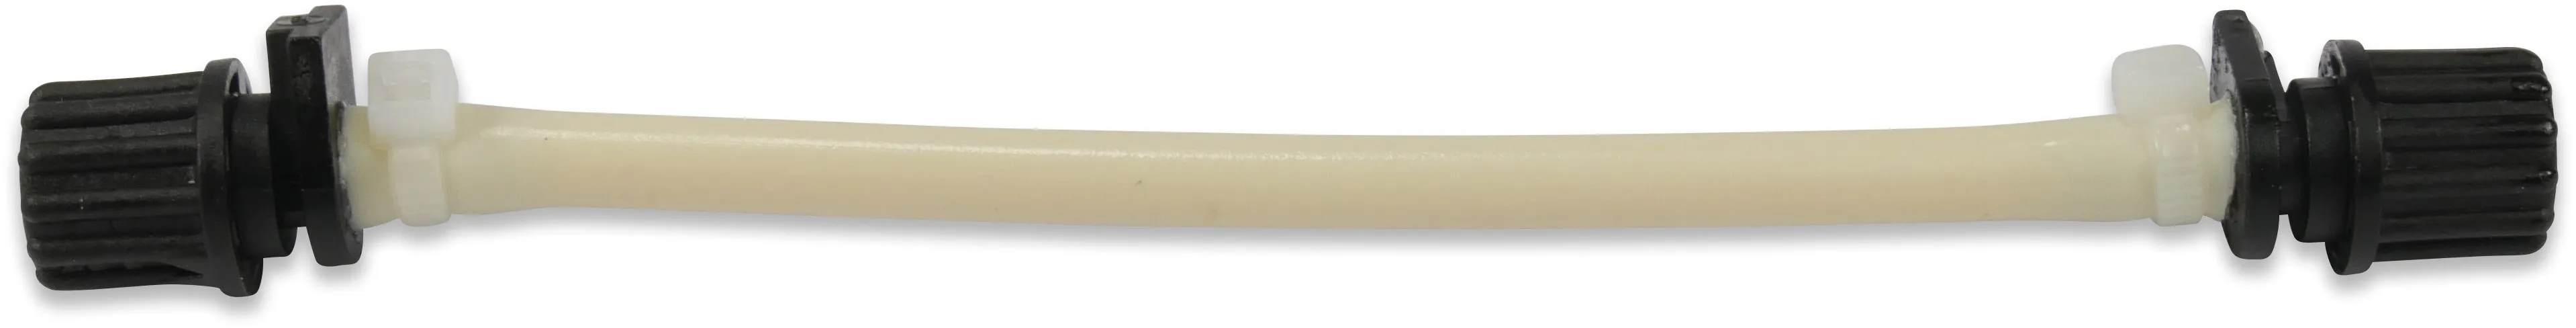 Zufuhrschlauch für peristaltische Dosierpumpe 7 mm x 5 mm